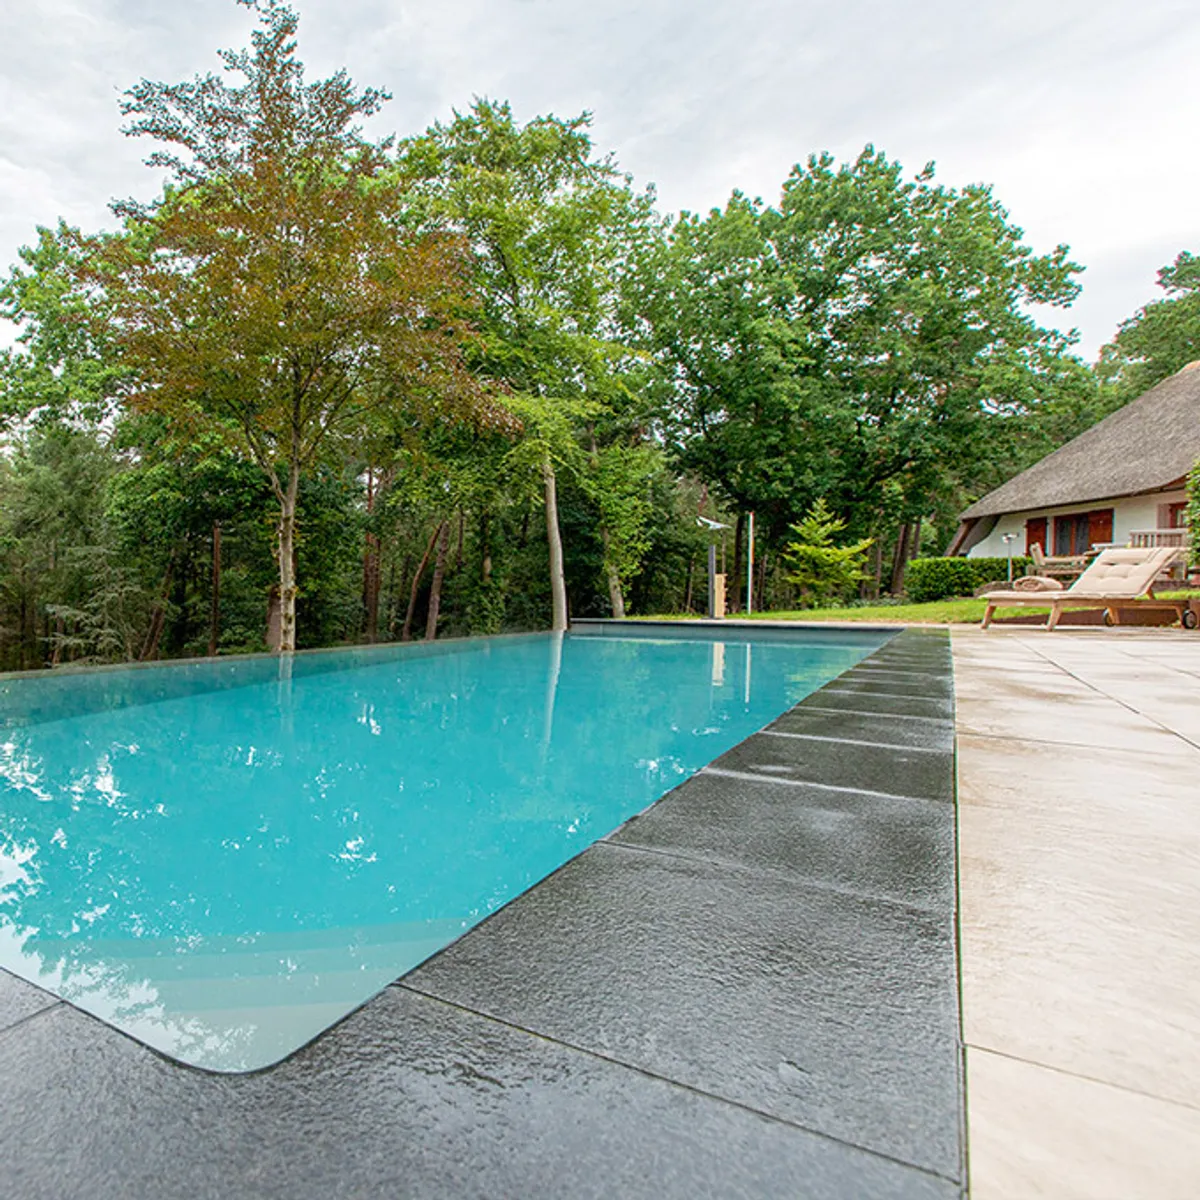 Overloopzwembad in tuin - Maatwerk zwembad kopen